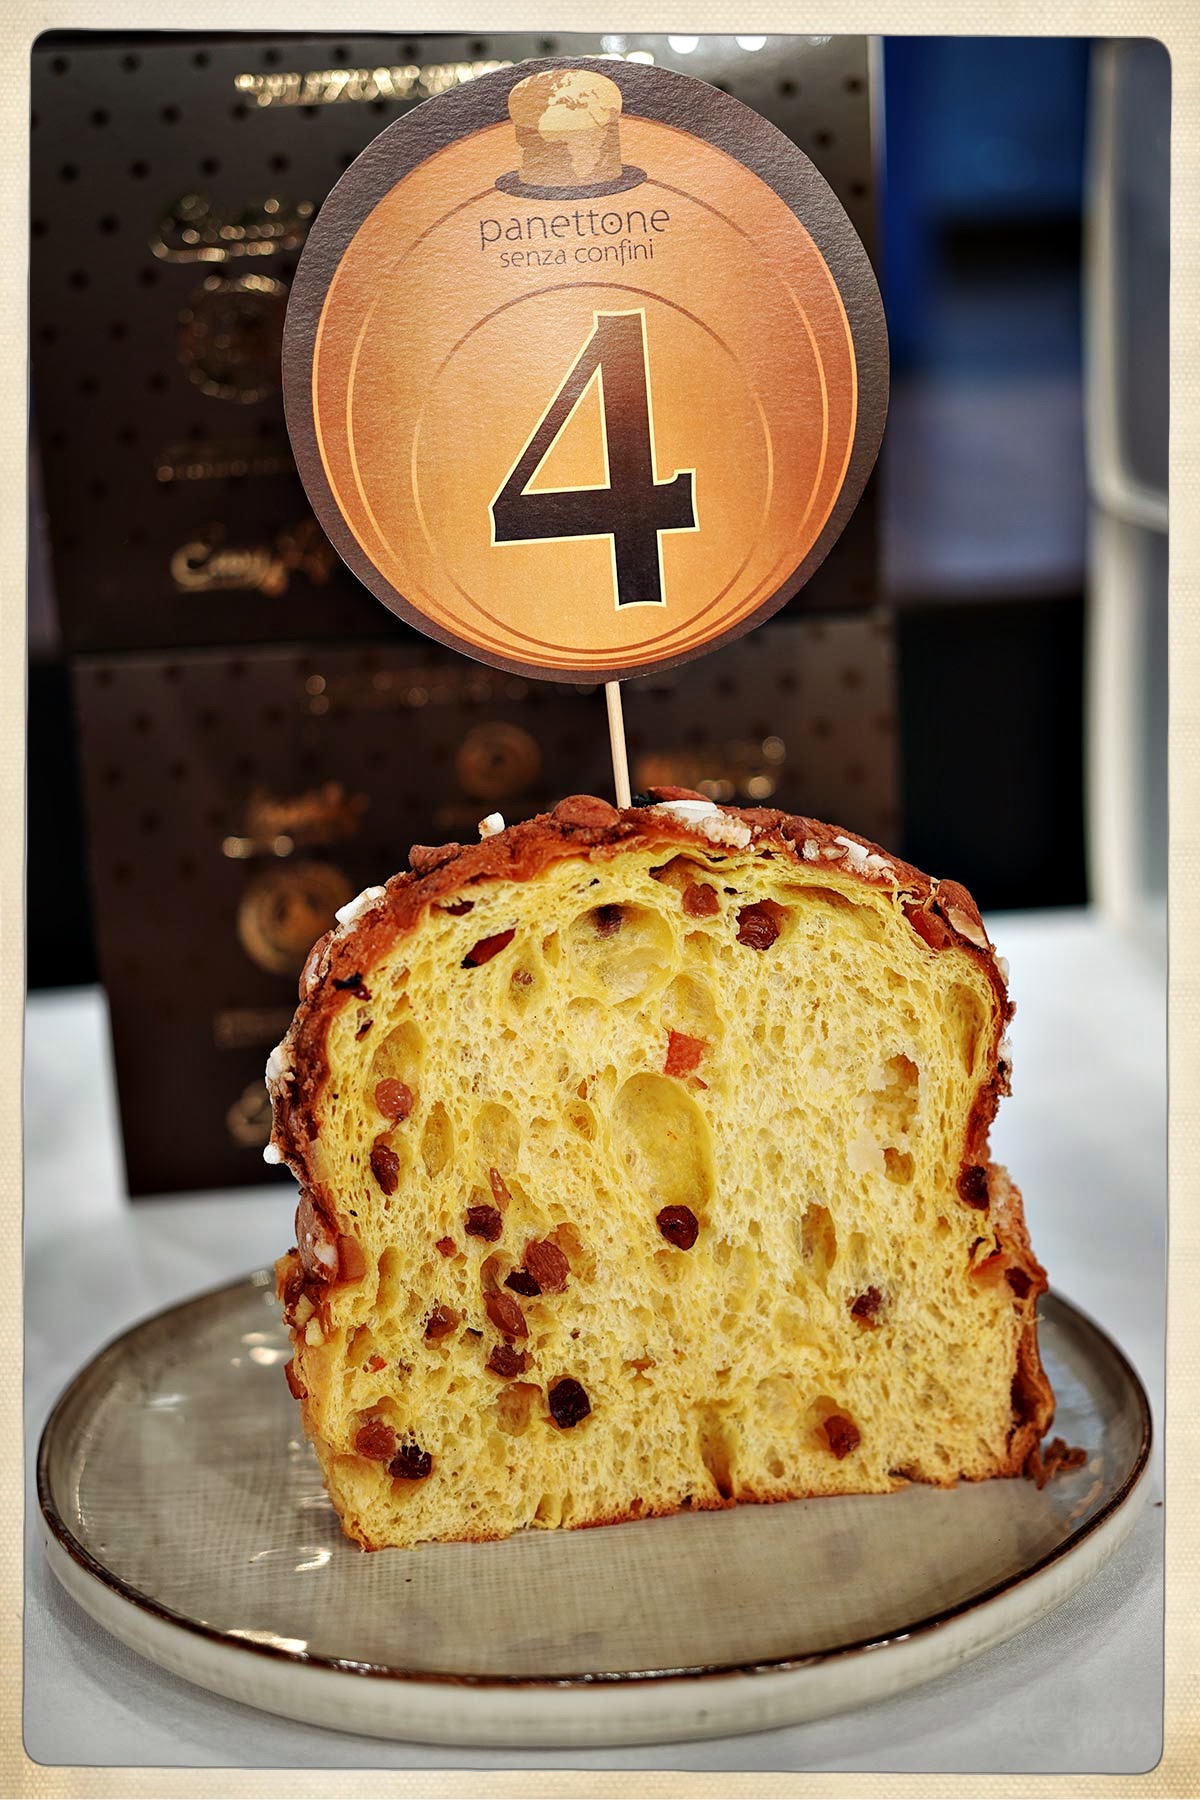 Gewinner des Panettone Wettbewerbs | Bake to the roots